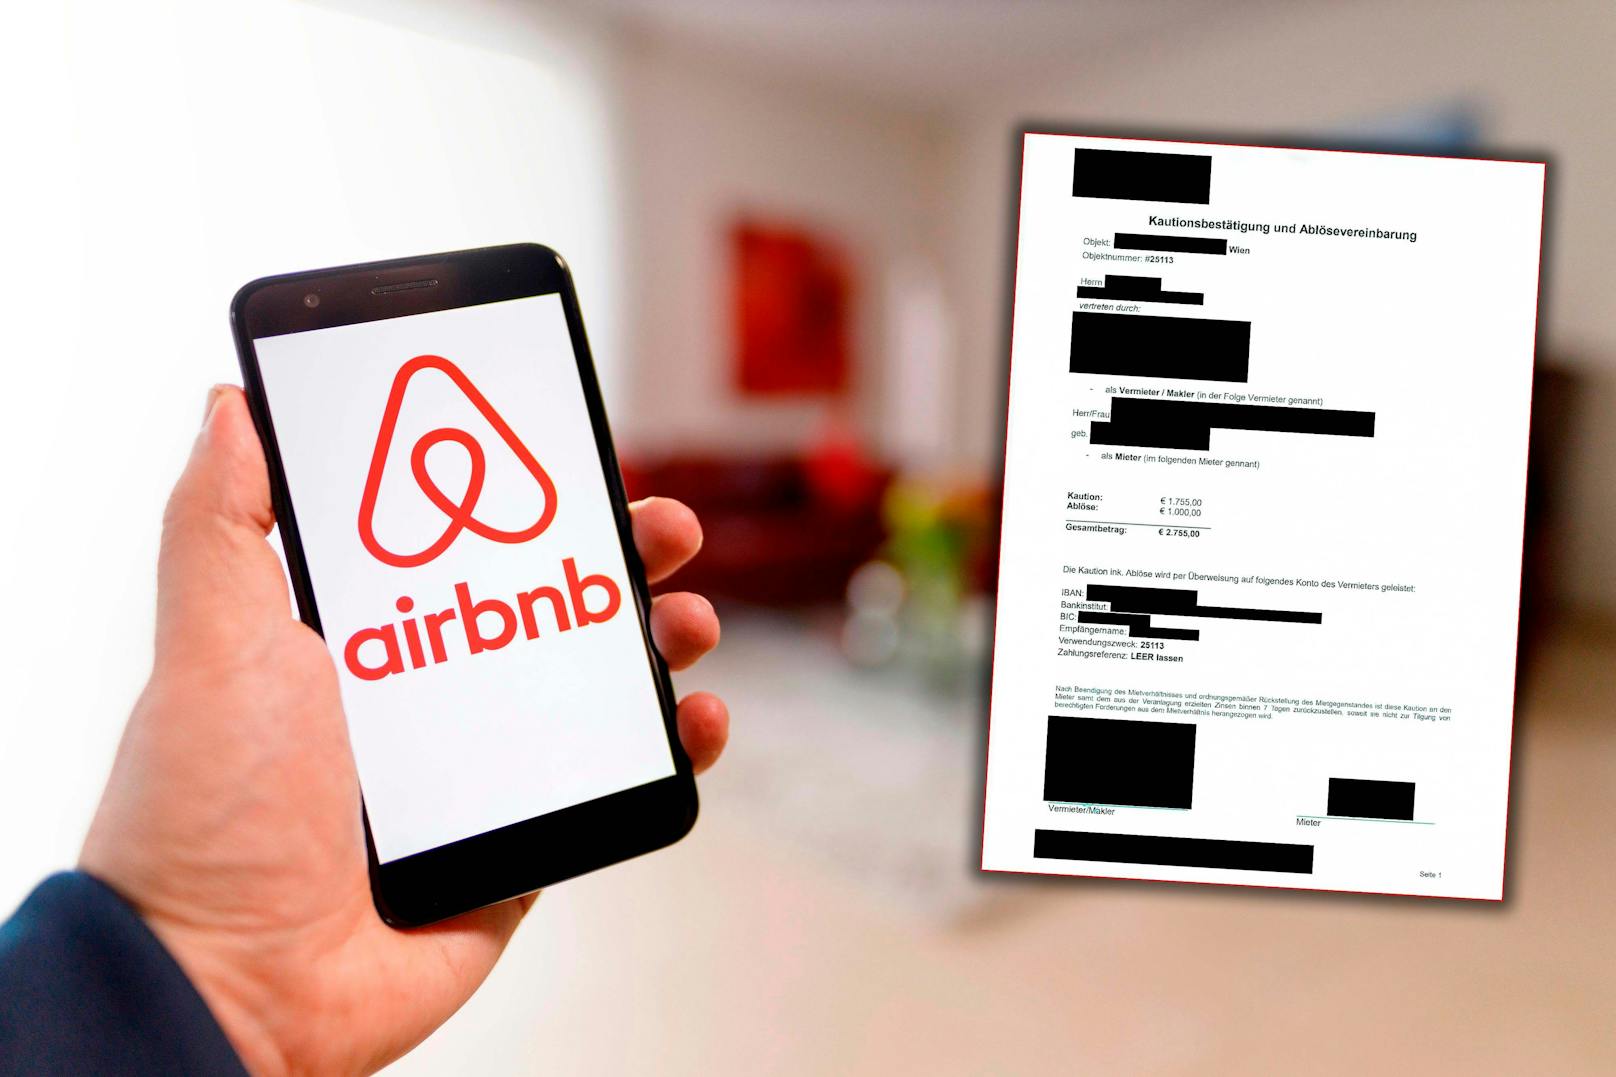 Airbnb-Betrug in Wien! Kriminelle kassieren tausende Euro